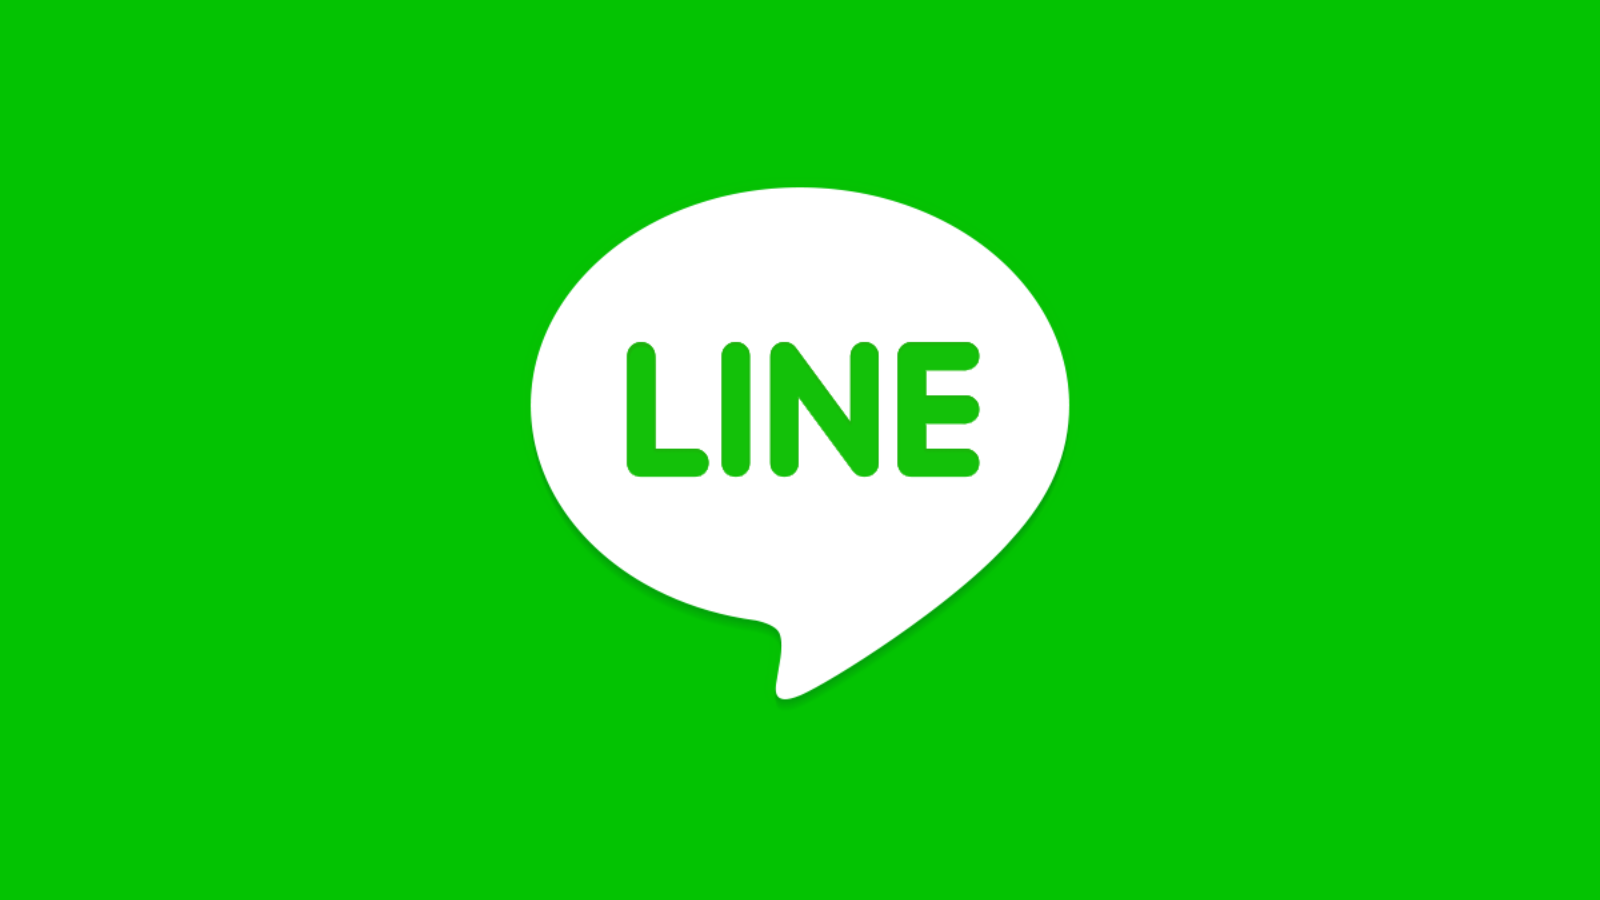 Sta klanten toe om contact met u op te nemen via Line Chat